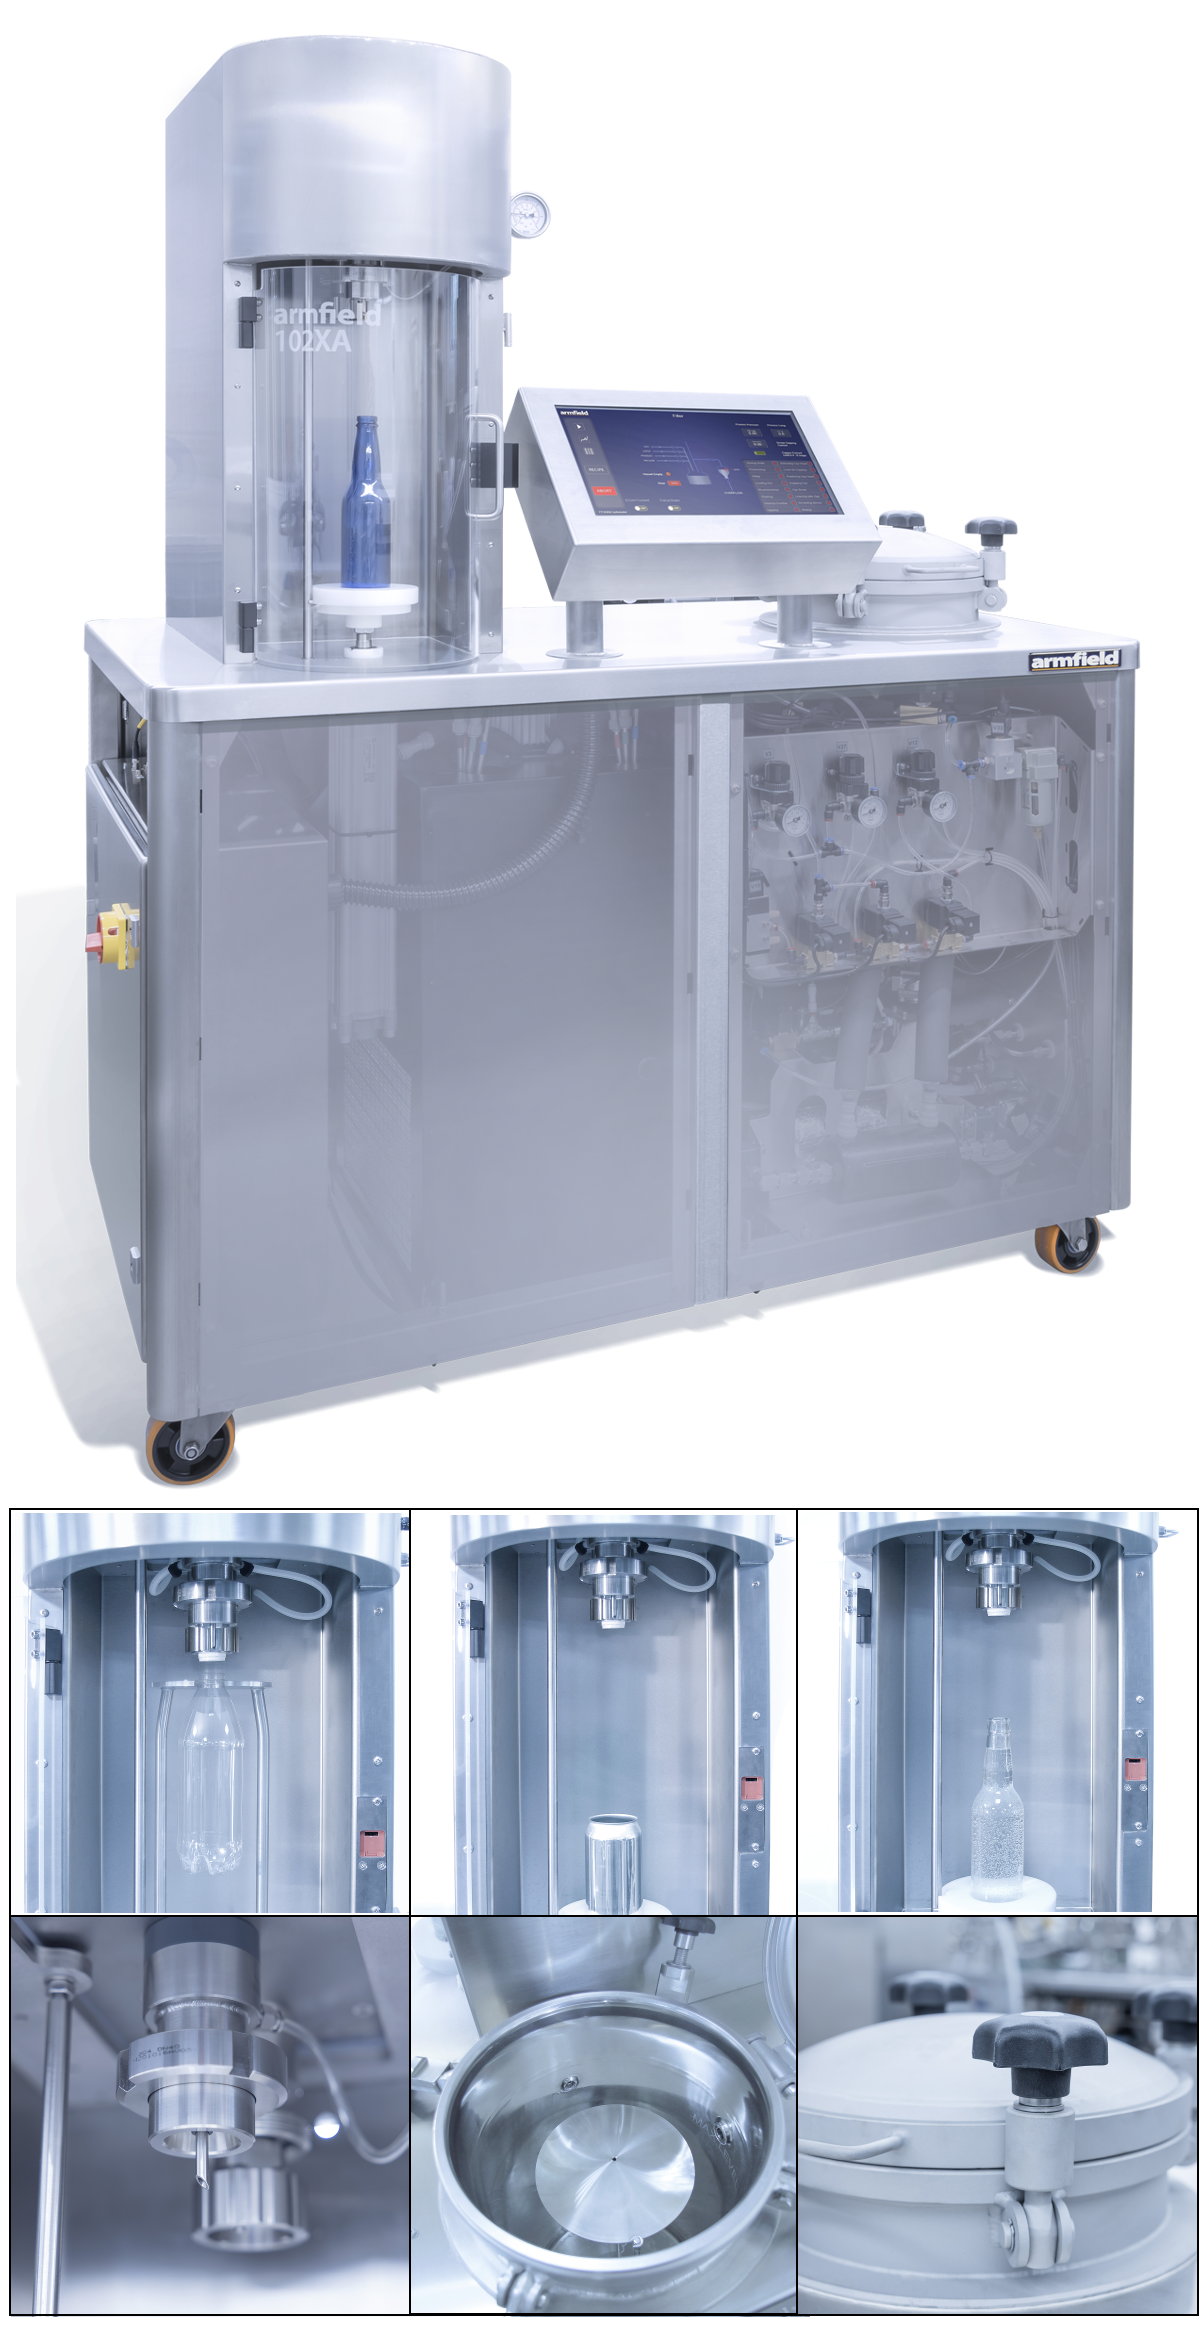 Carbonatadora y envasadora de bebidas a escala de laboratorio con lotes de 15 litros y control por pantalla touch FT102XA-15-A